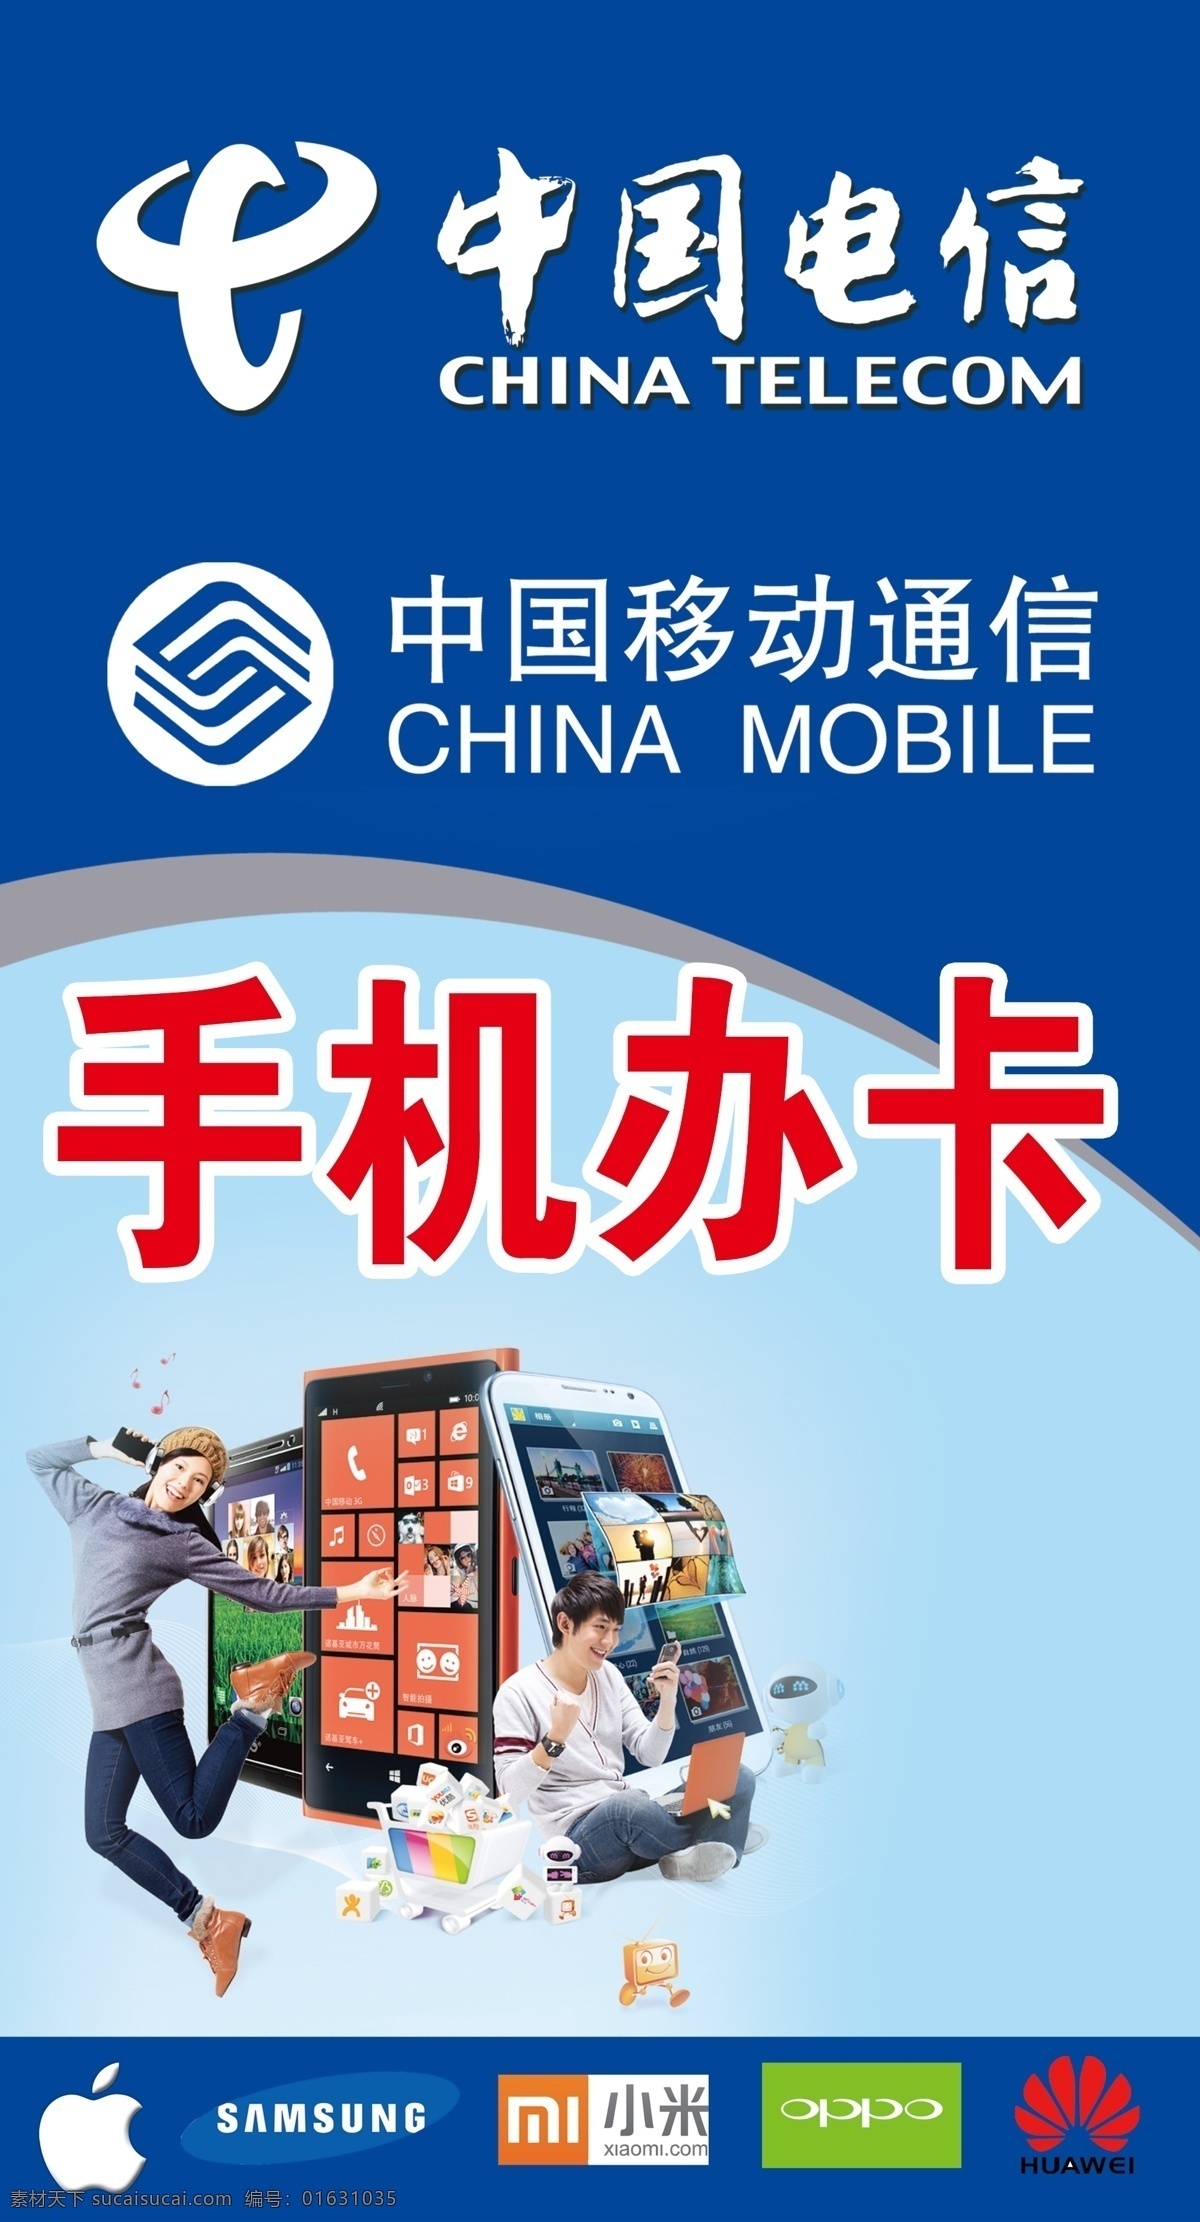 手机办卡 手机 中国电信 中国移动 办卡 入网办卡 展板模板 蓝色